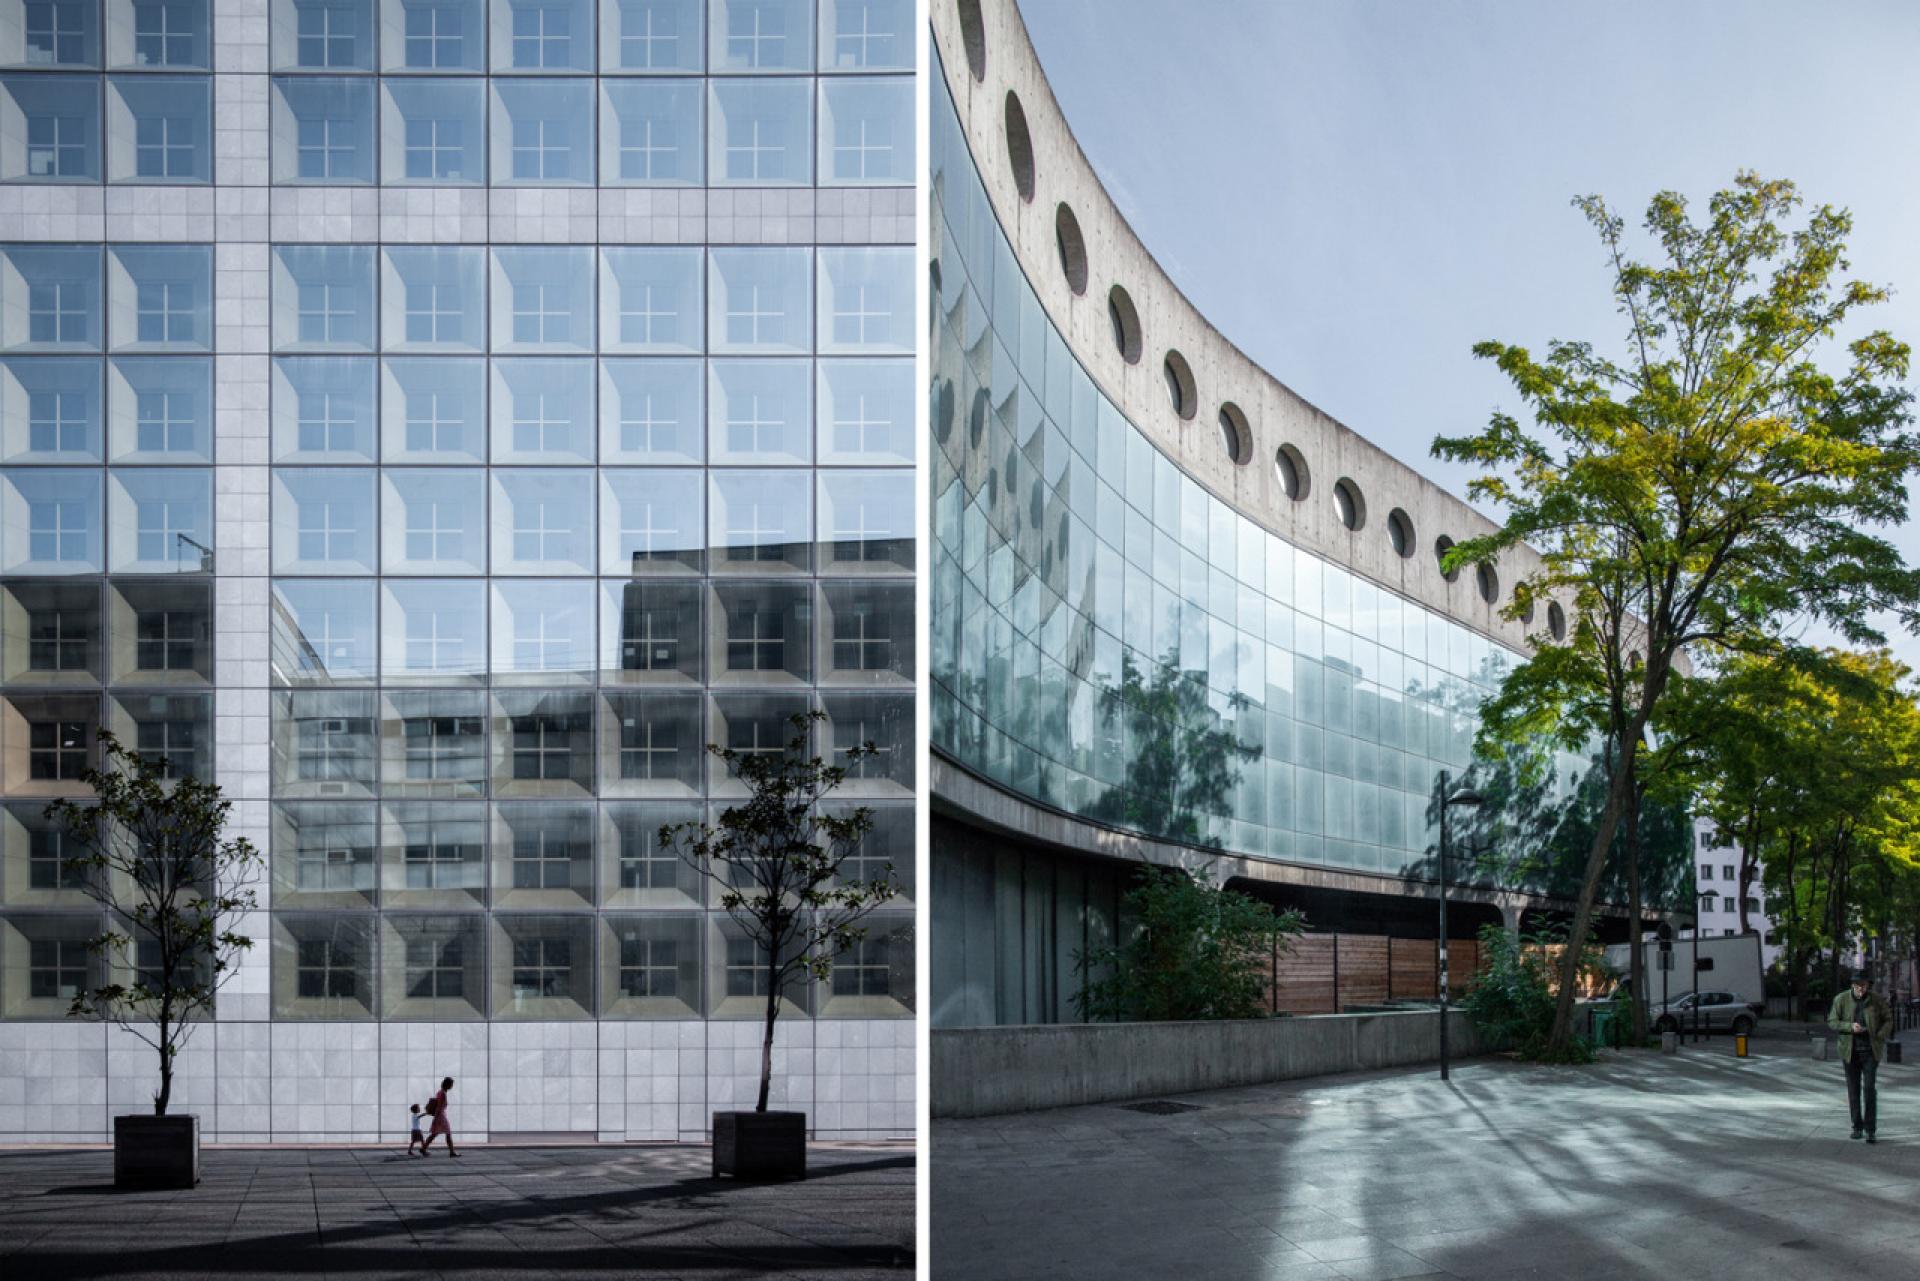 Left: Grande Arche by Johan Otto von Spreckelsen and Paul Andreu, Paris (1985-89), right: Former Headquarters of “L'Humanité" by Oscar Niemeyer, Seine-Saint-Denis, Ile-de-France (1987-1989).